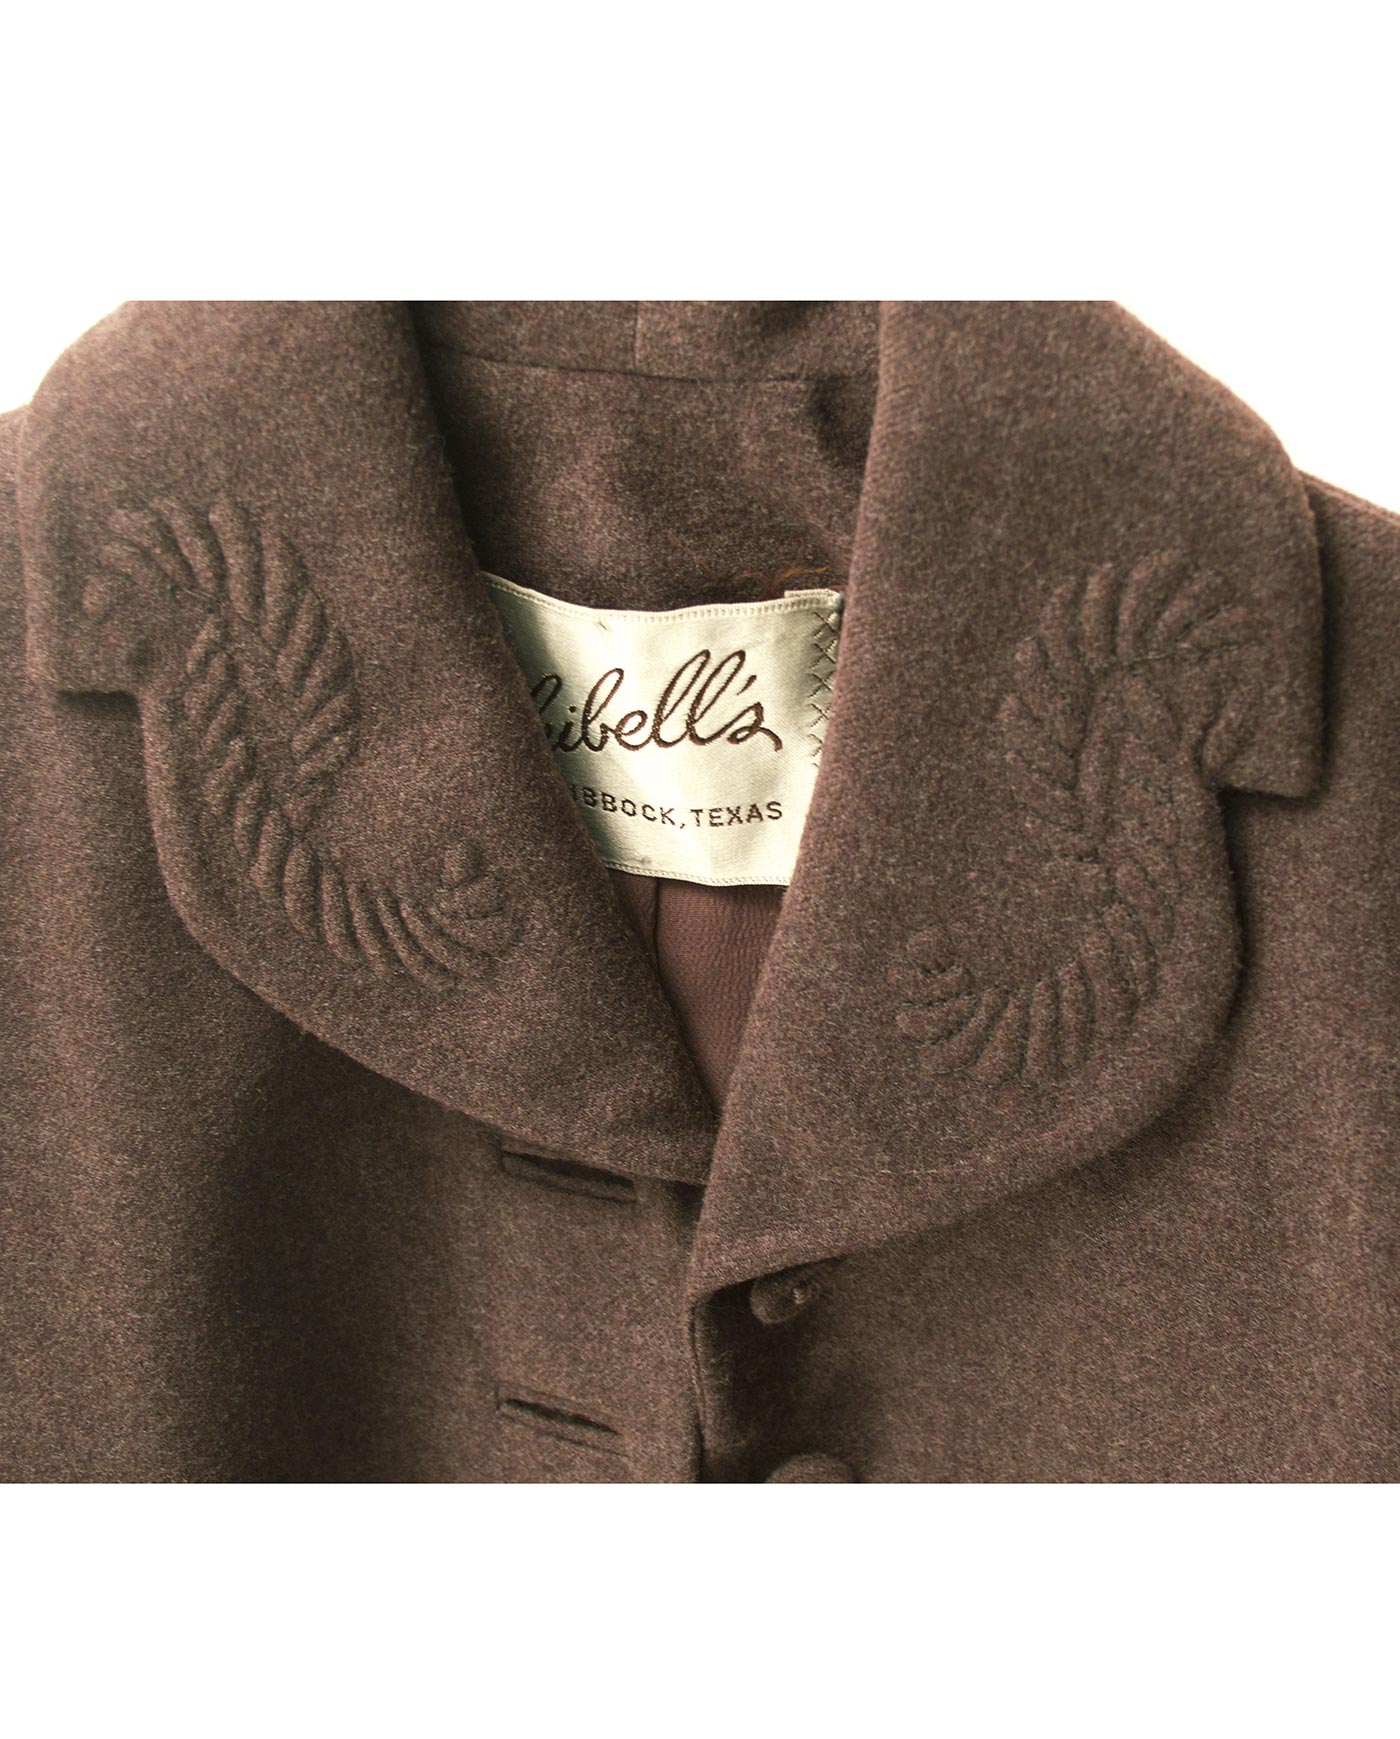 SKIBELL S wool jacket 40/50s